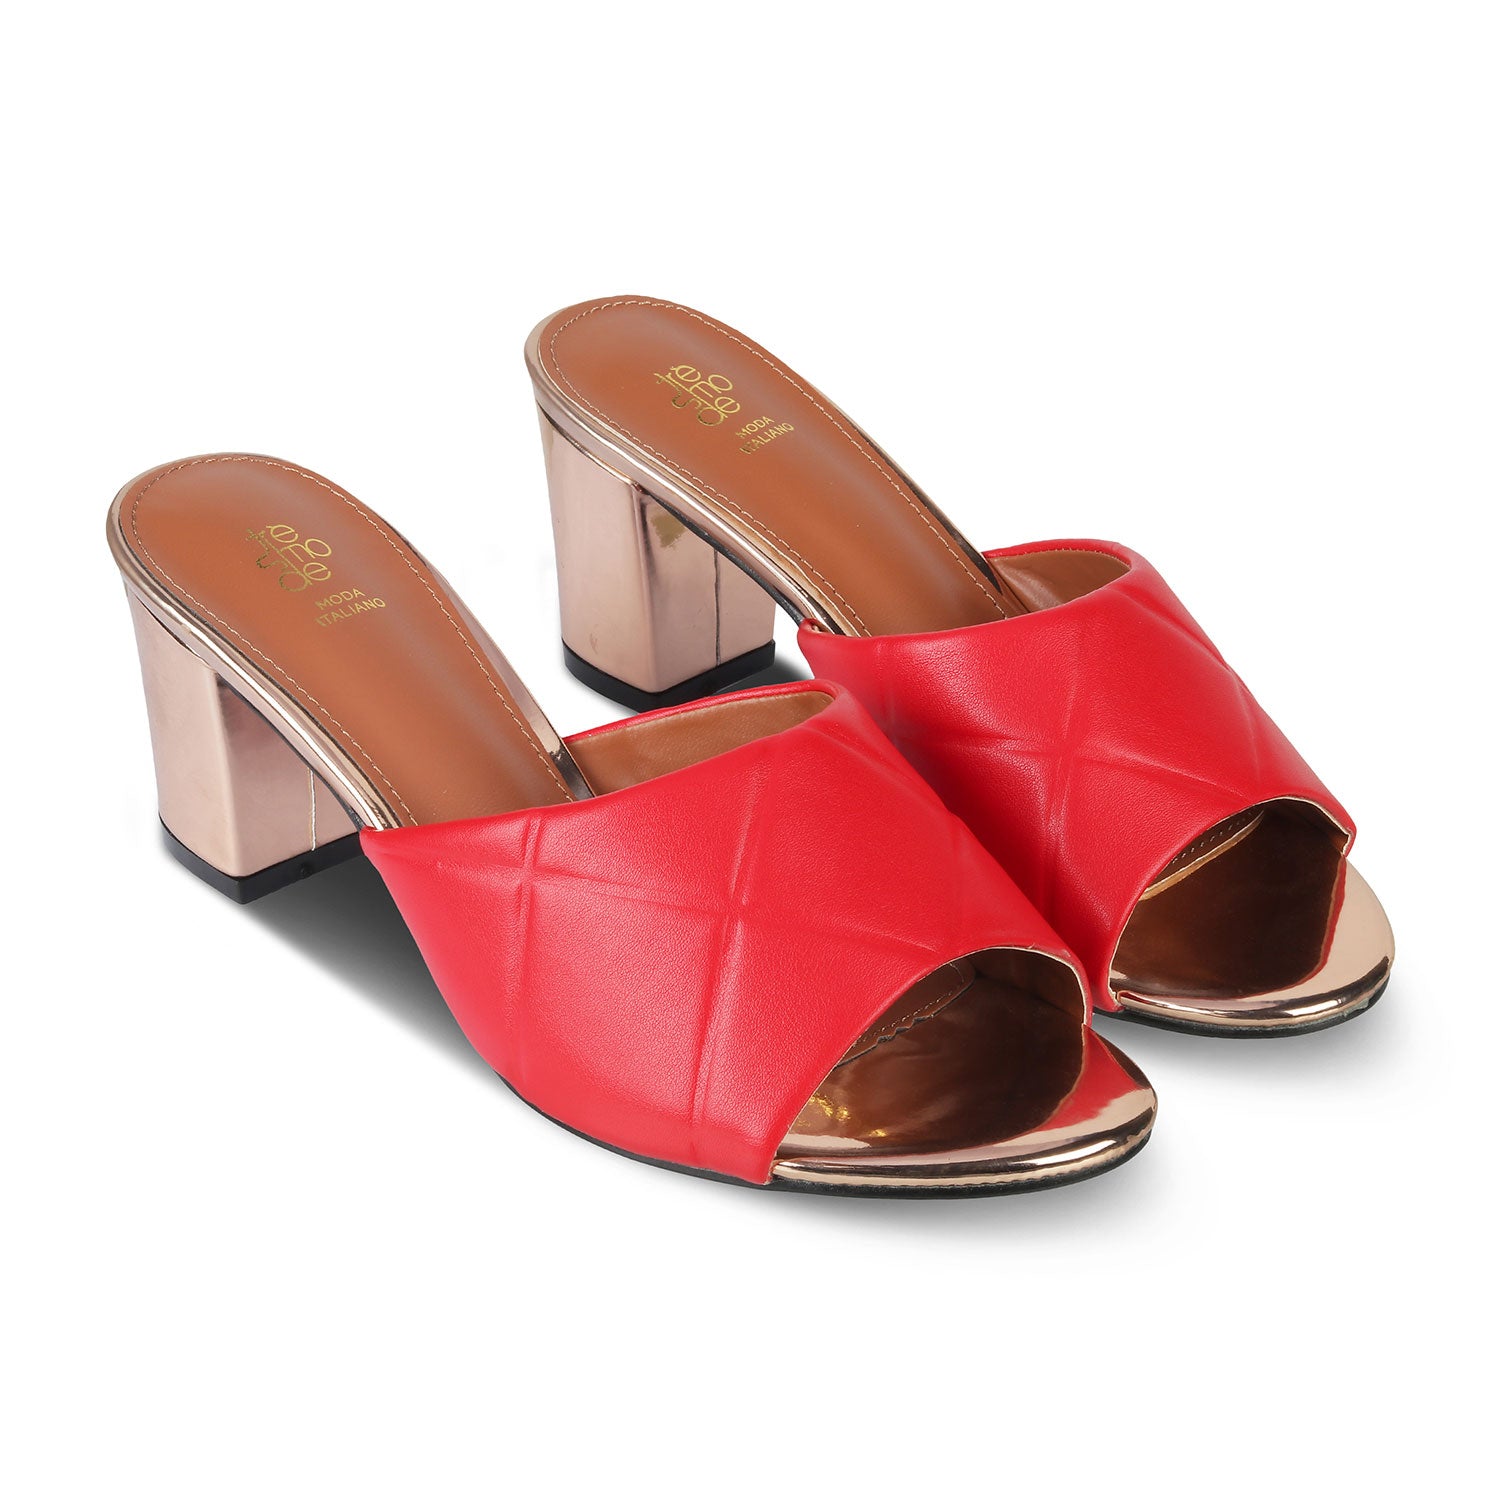 Tresmode-The Britle Red Women's Dress Block Heel Sandals Tresmode-Tresmode